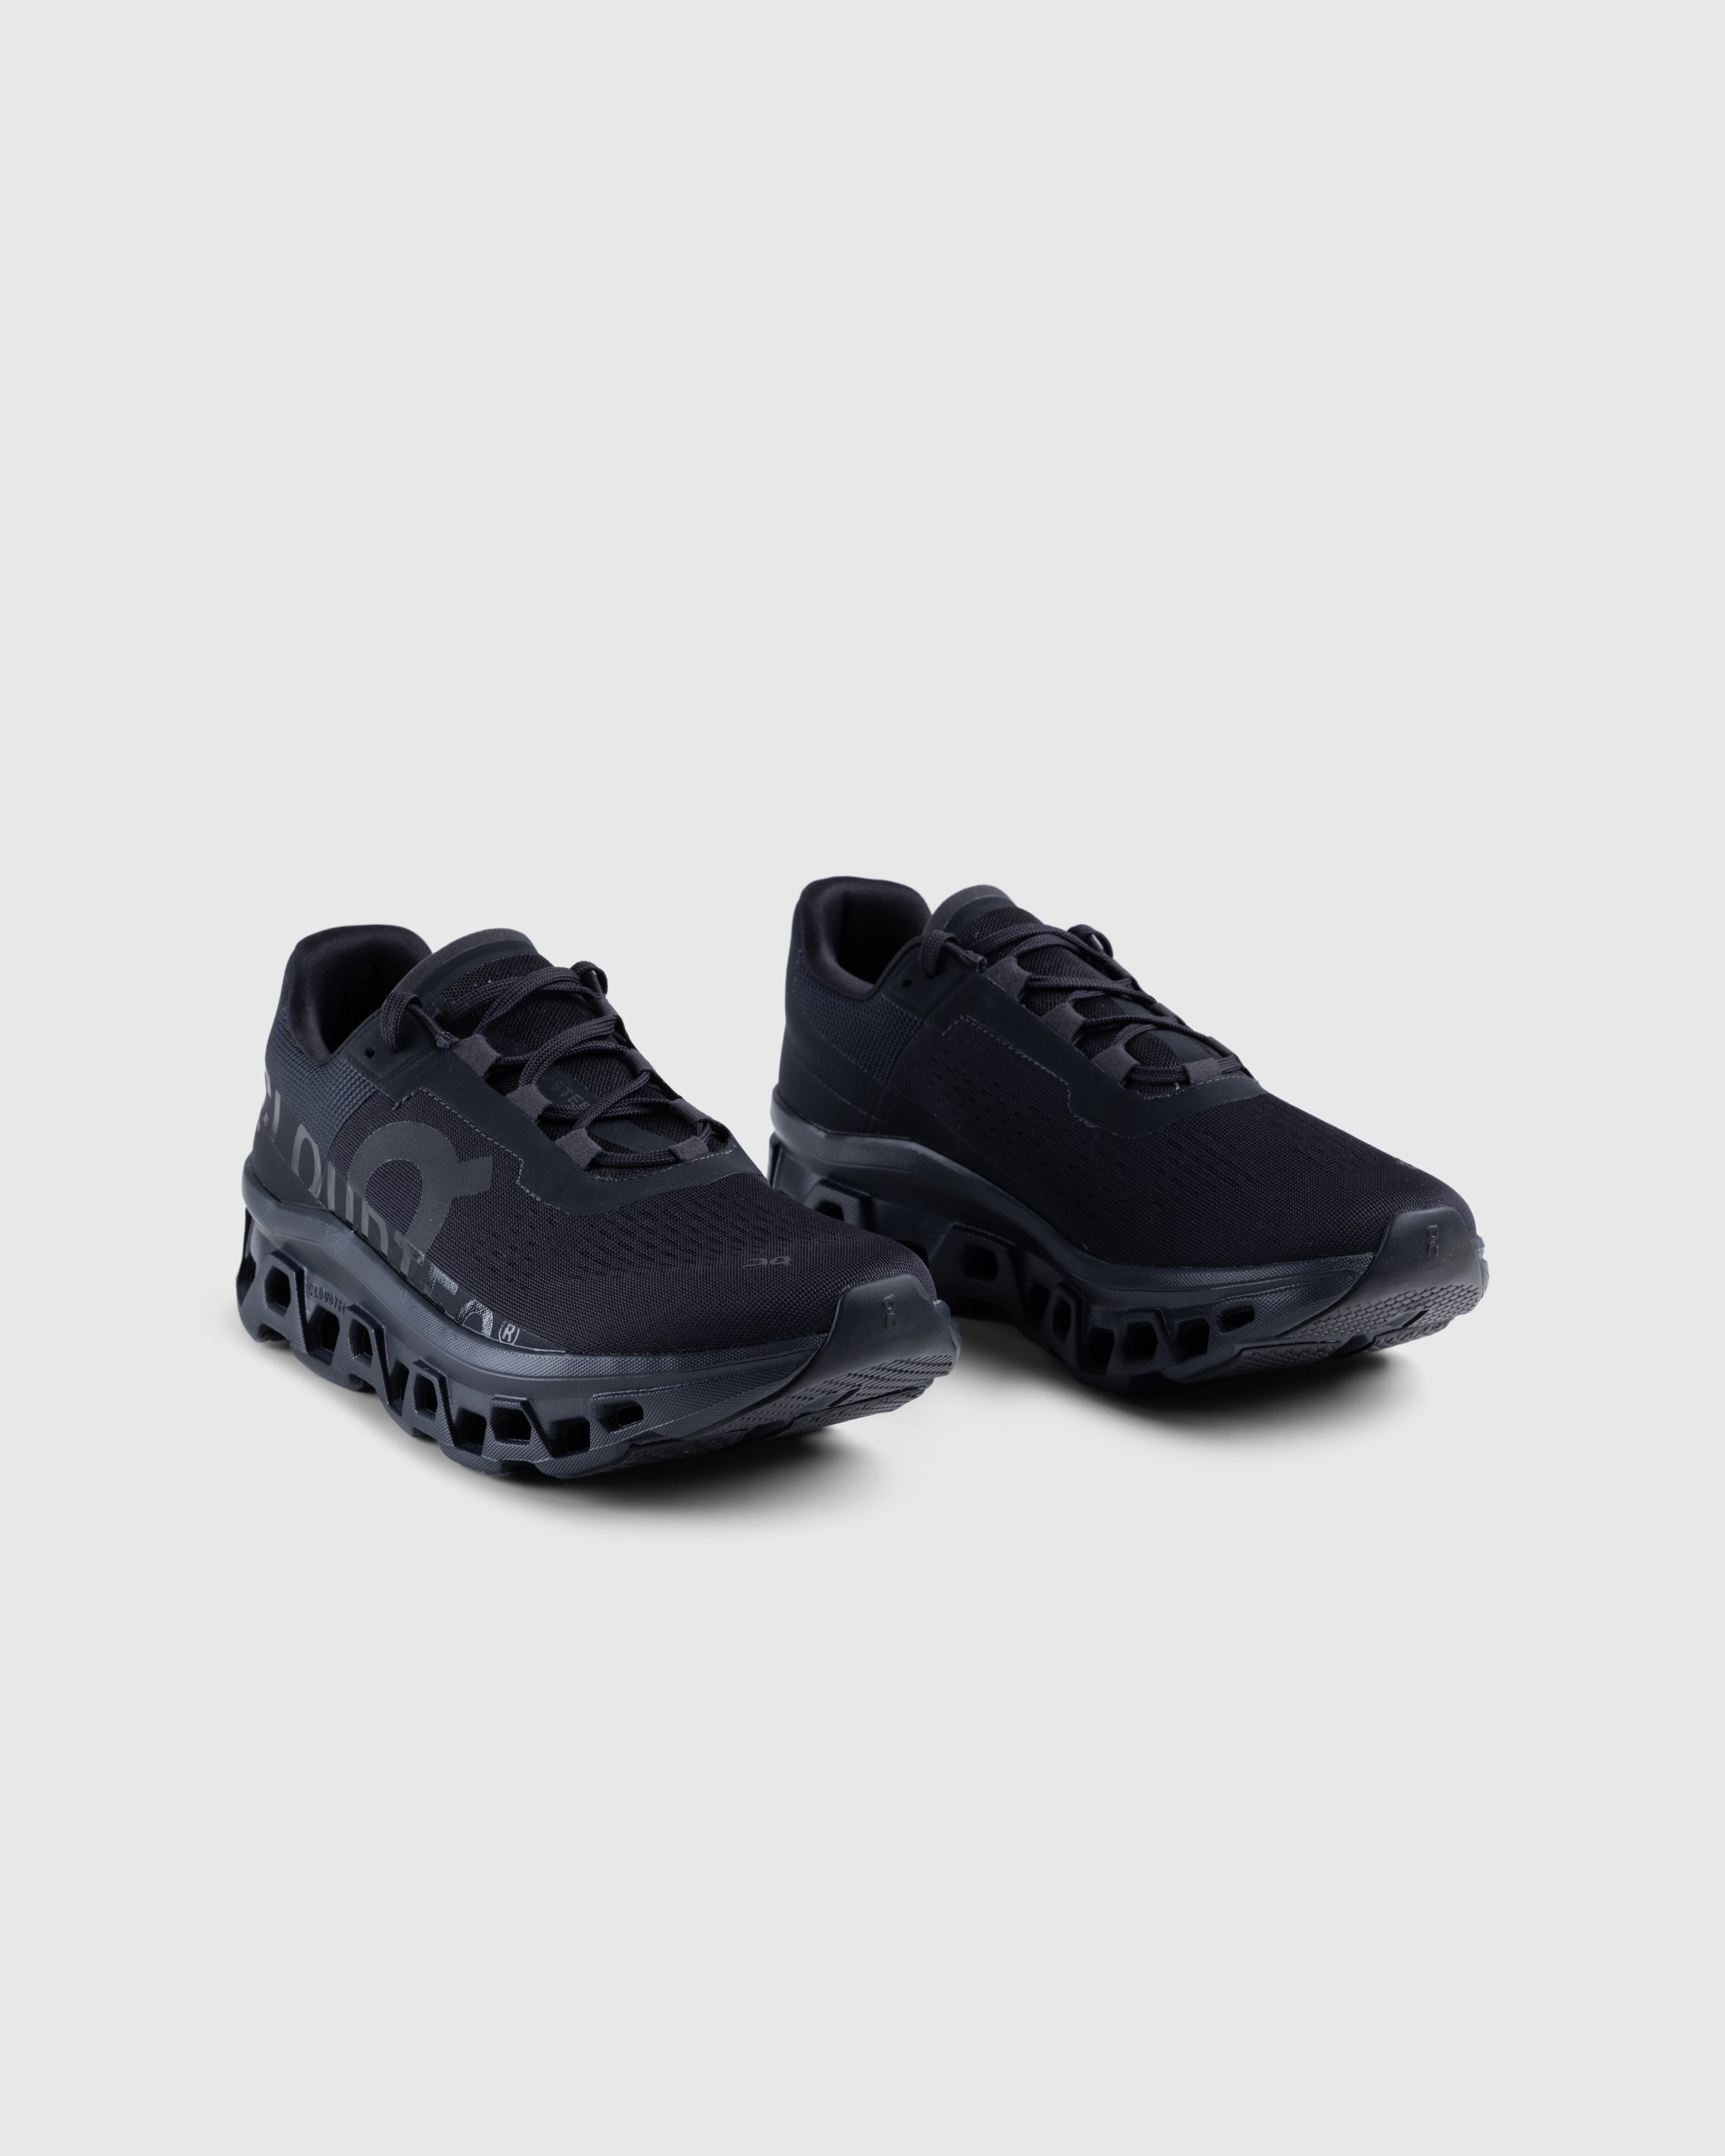 On - PR Cloudmonster 1 M - Footwear - Black - Image 3